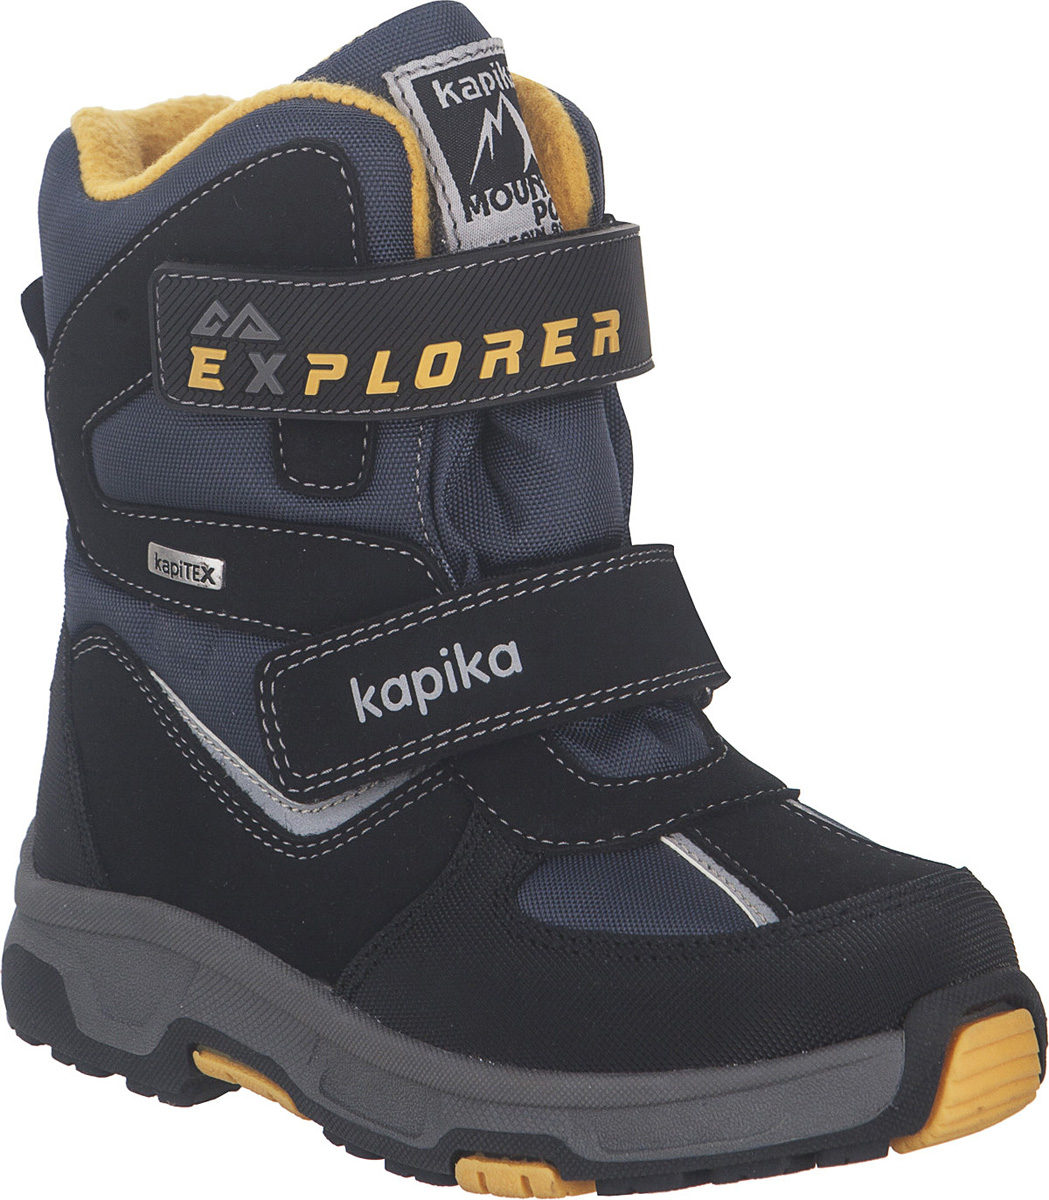 Ботинки для мальчика Kapika KapiTEX, цвет: черный, синий, желтый. 43207-2. Размер 31